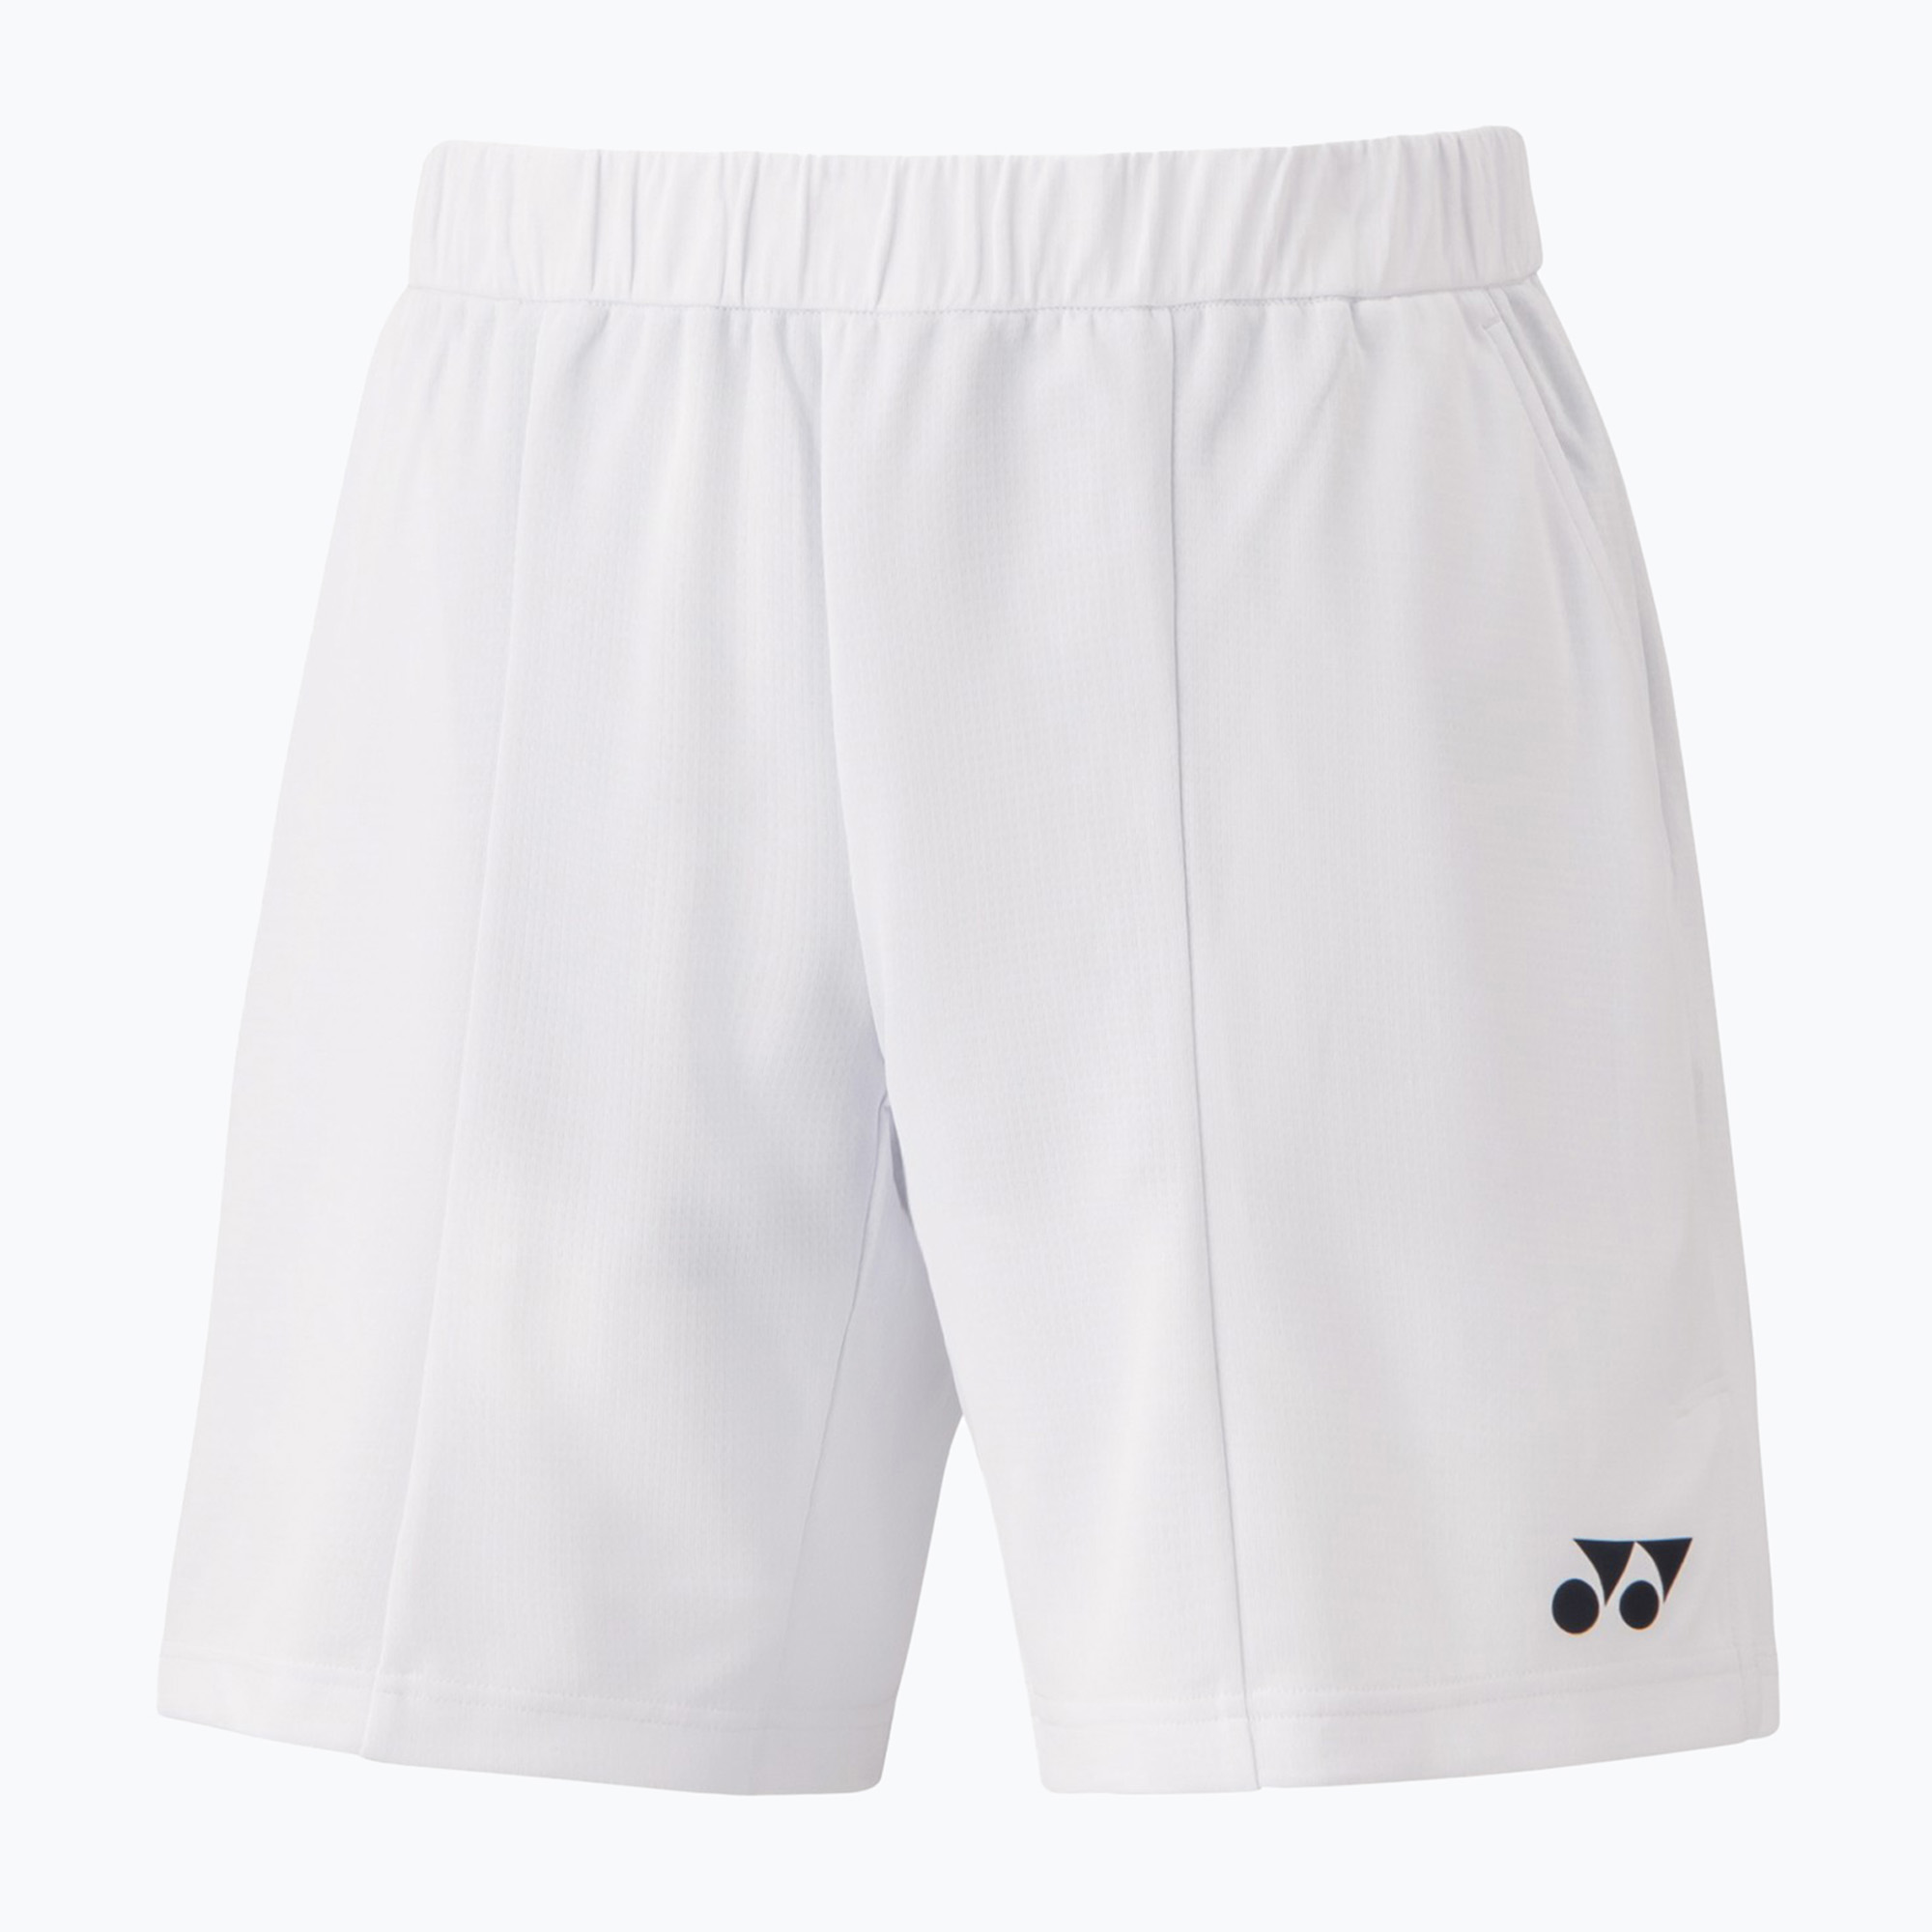 Мъжки тенис шорти YONEX Knit white CSM151383W